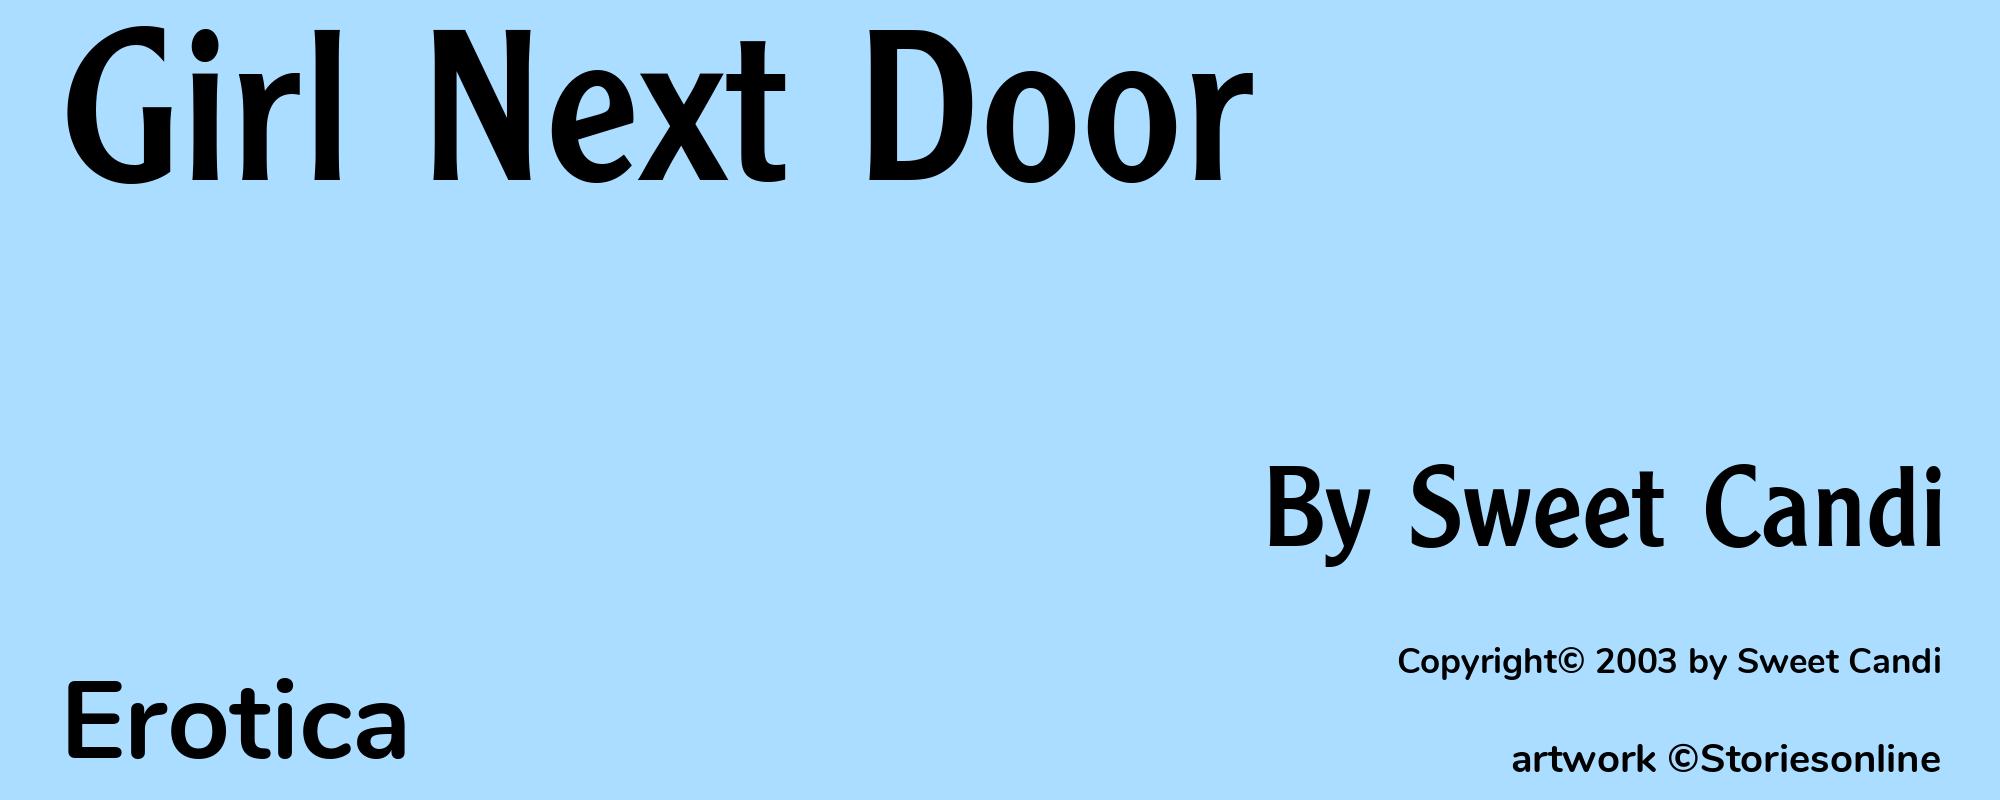 Girl Next Door - Cover